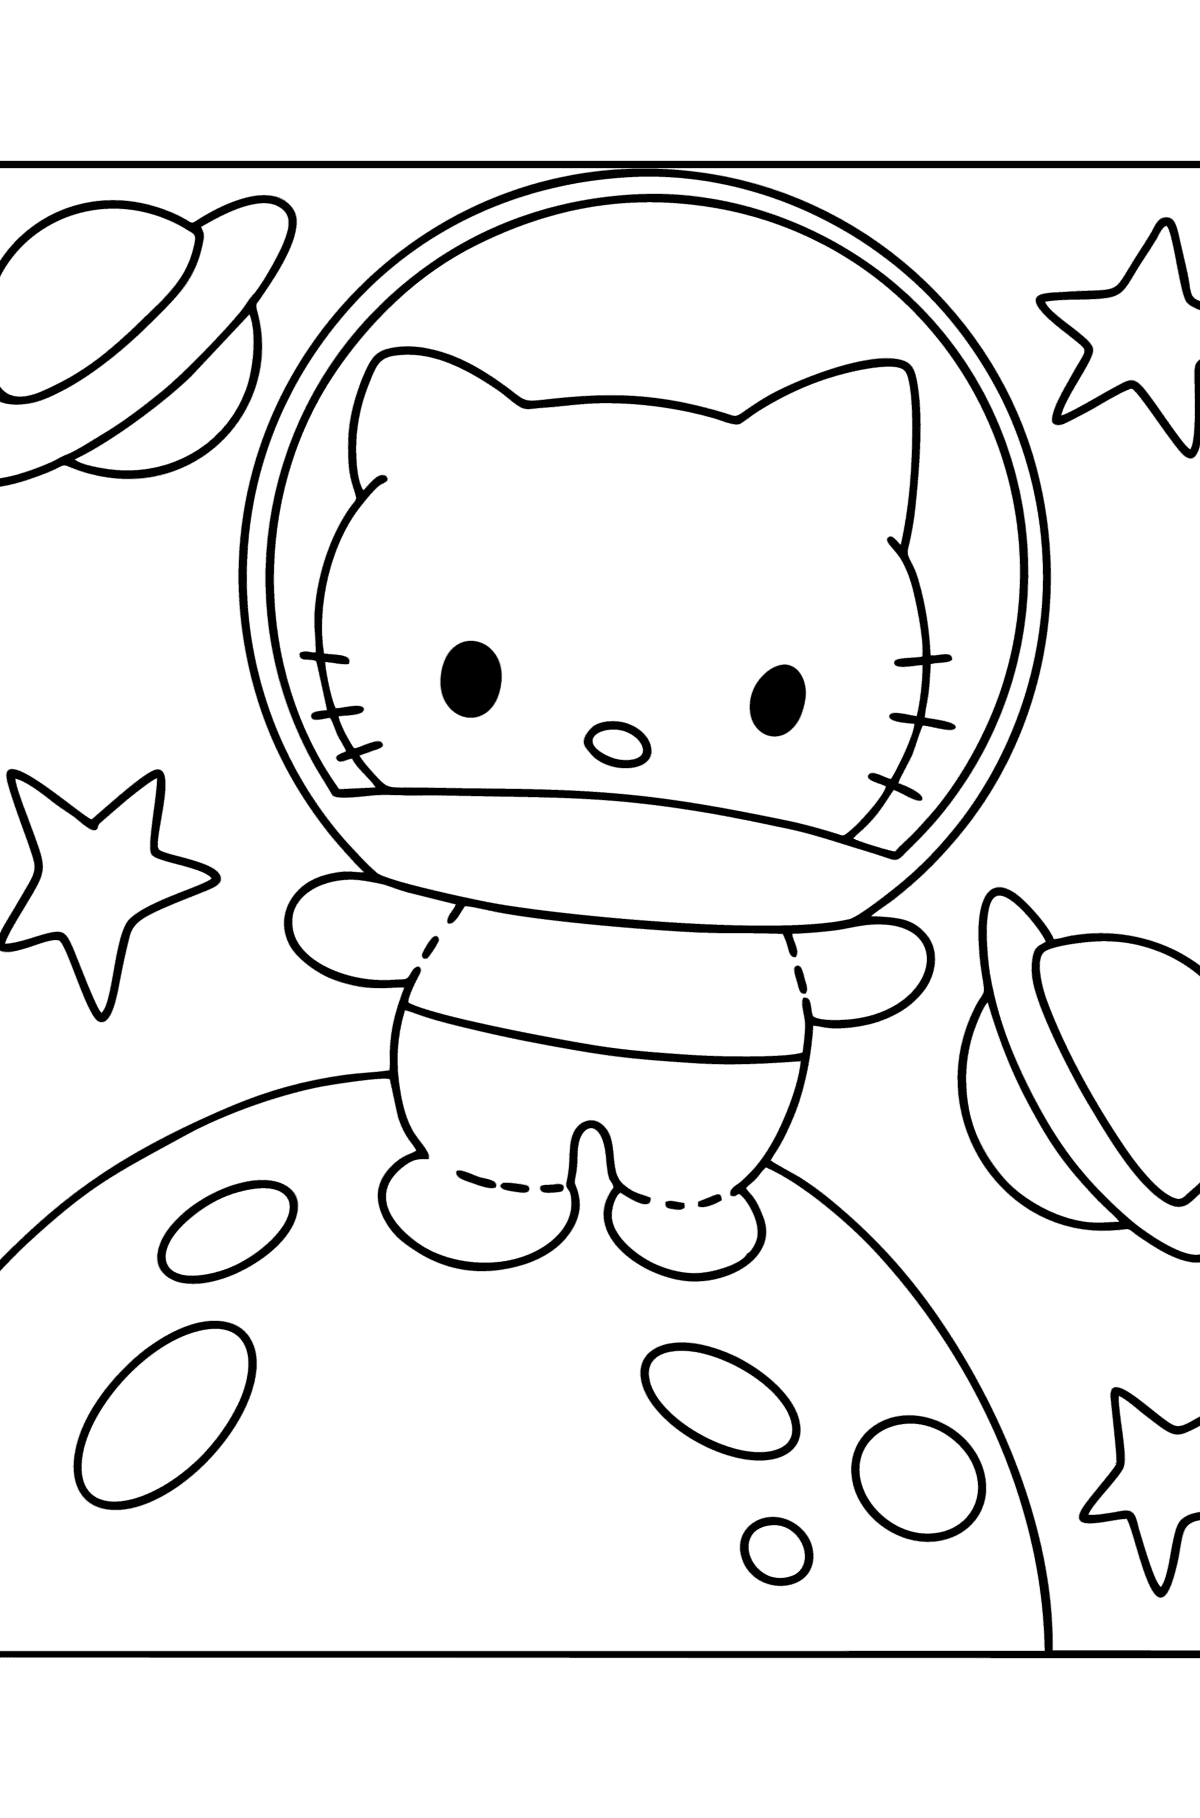 Tegning til fargelegging Hello Kitty astronaut - Tegninger til fargelegging for barn